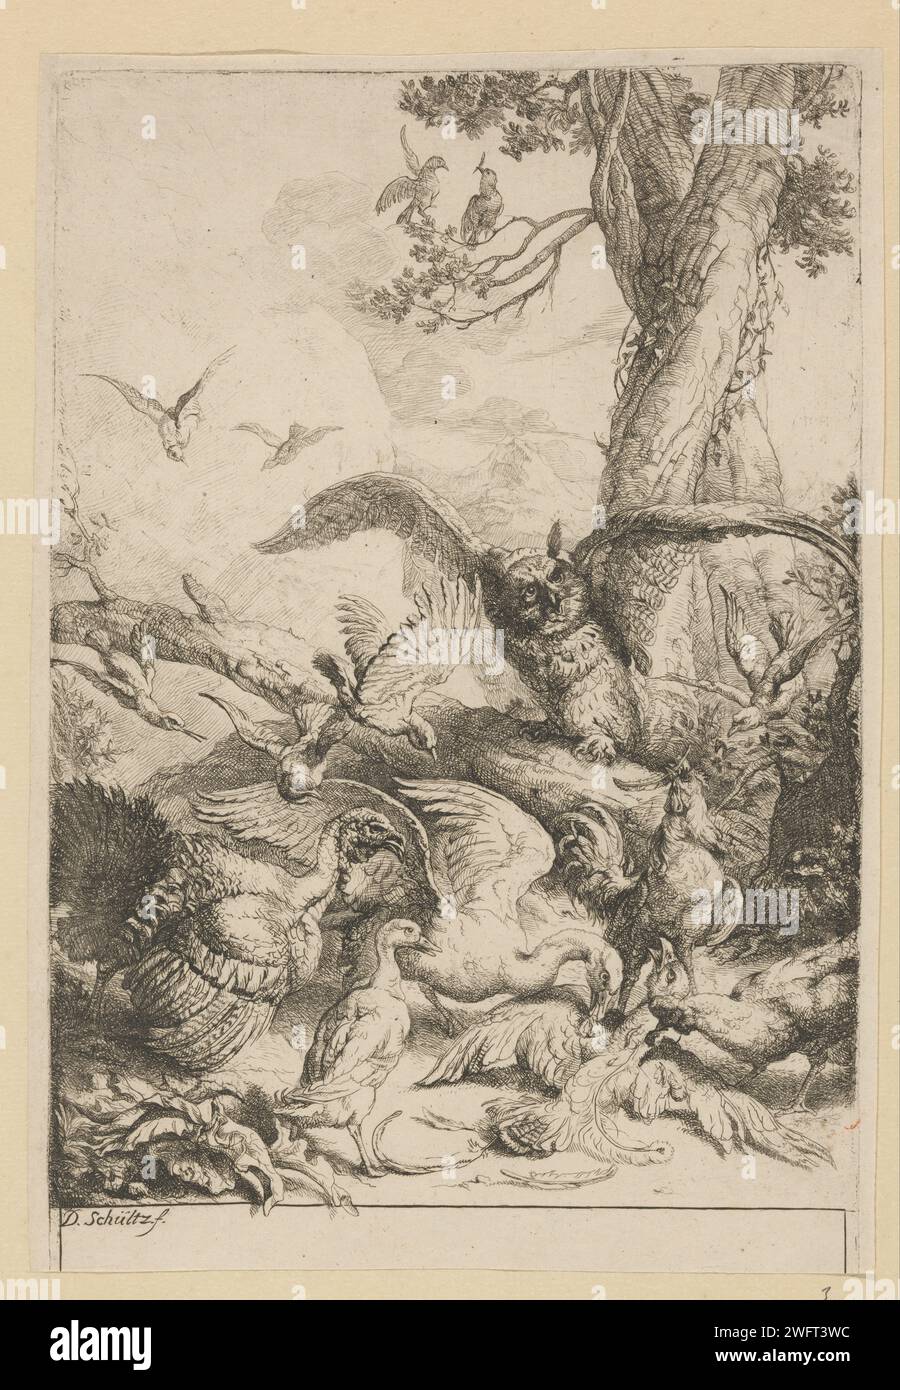 Oiseaux cueillant des sources de paon d'une pie, Georg Daniel Schultz (II), 1620 - 1683 impression à la fable de la pie avec les sources de paon d'Aesopus. La fable décrit comment une pie a décoré avec des ressorts de paon pour appartenir aux paons. Cependant, il est démasqué et choisi et choisi par les paons. La morale de l'histoire montre qu'ils doivent rester avec leur propre position. gravure sur papier des oiseaux ornementaux : paon. Fables d'Aesop : utilisez 85(...) Banque D'Images